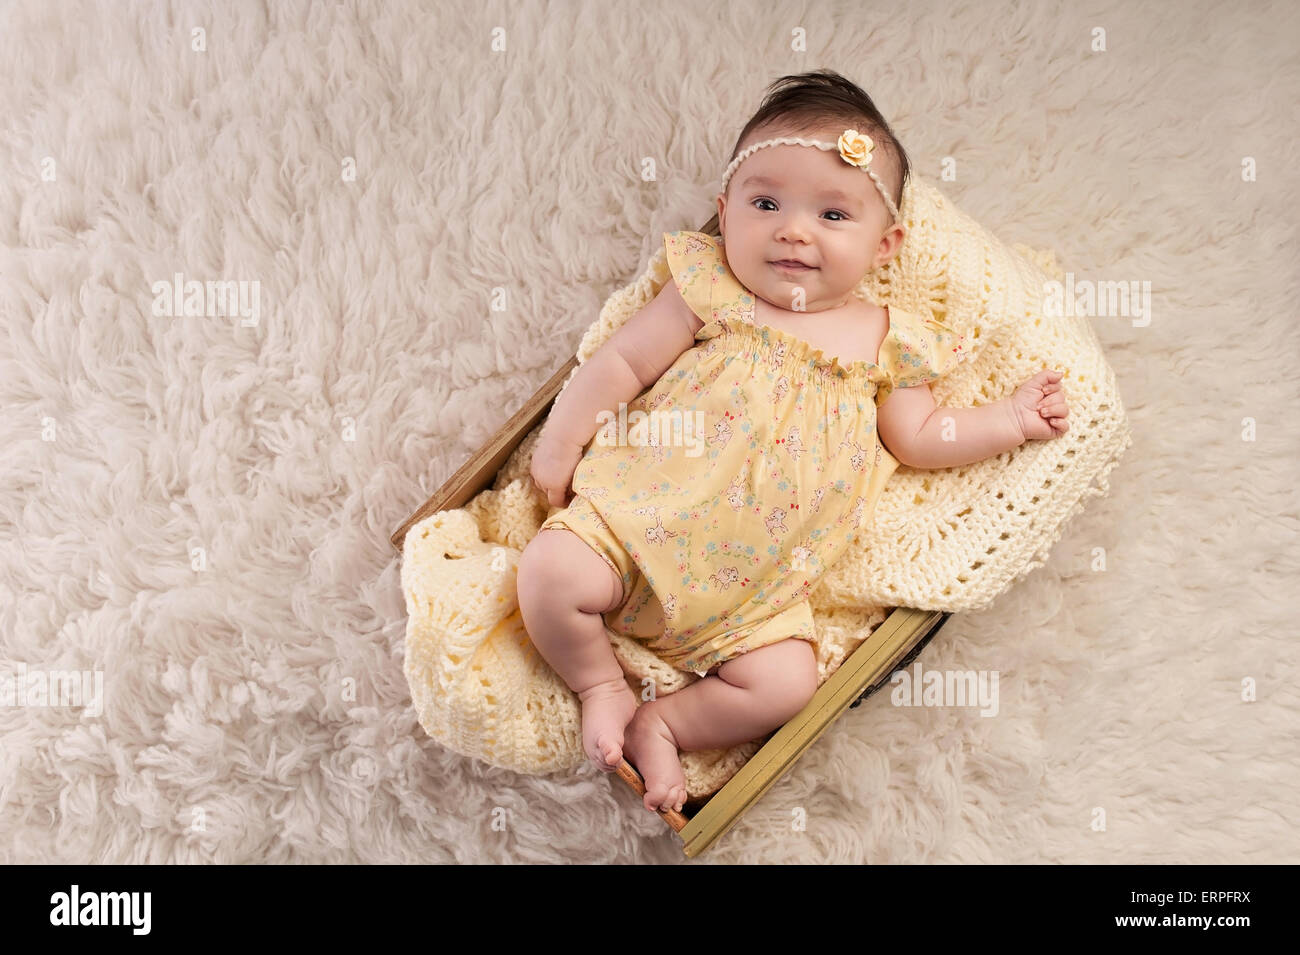 Souriant, trois mois baby girl wearing a vintage jaune inspiré, floral romper et couché dans un bac jaune. Banque D'Images